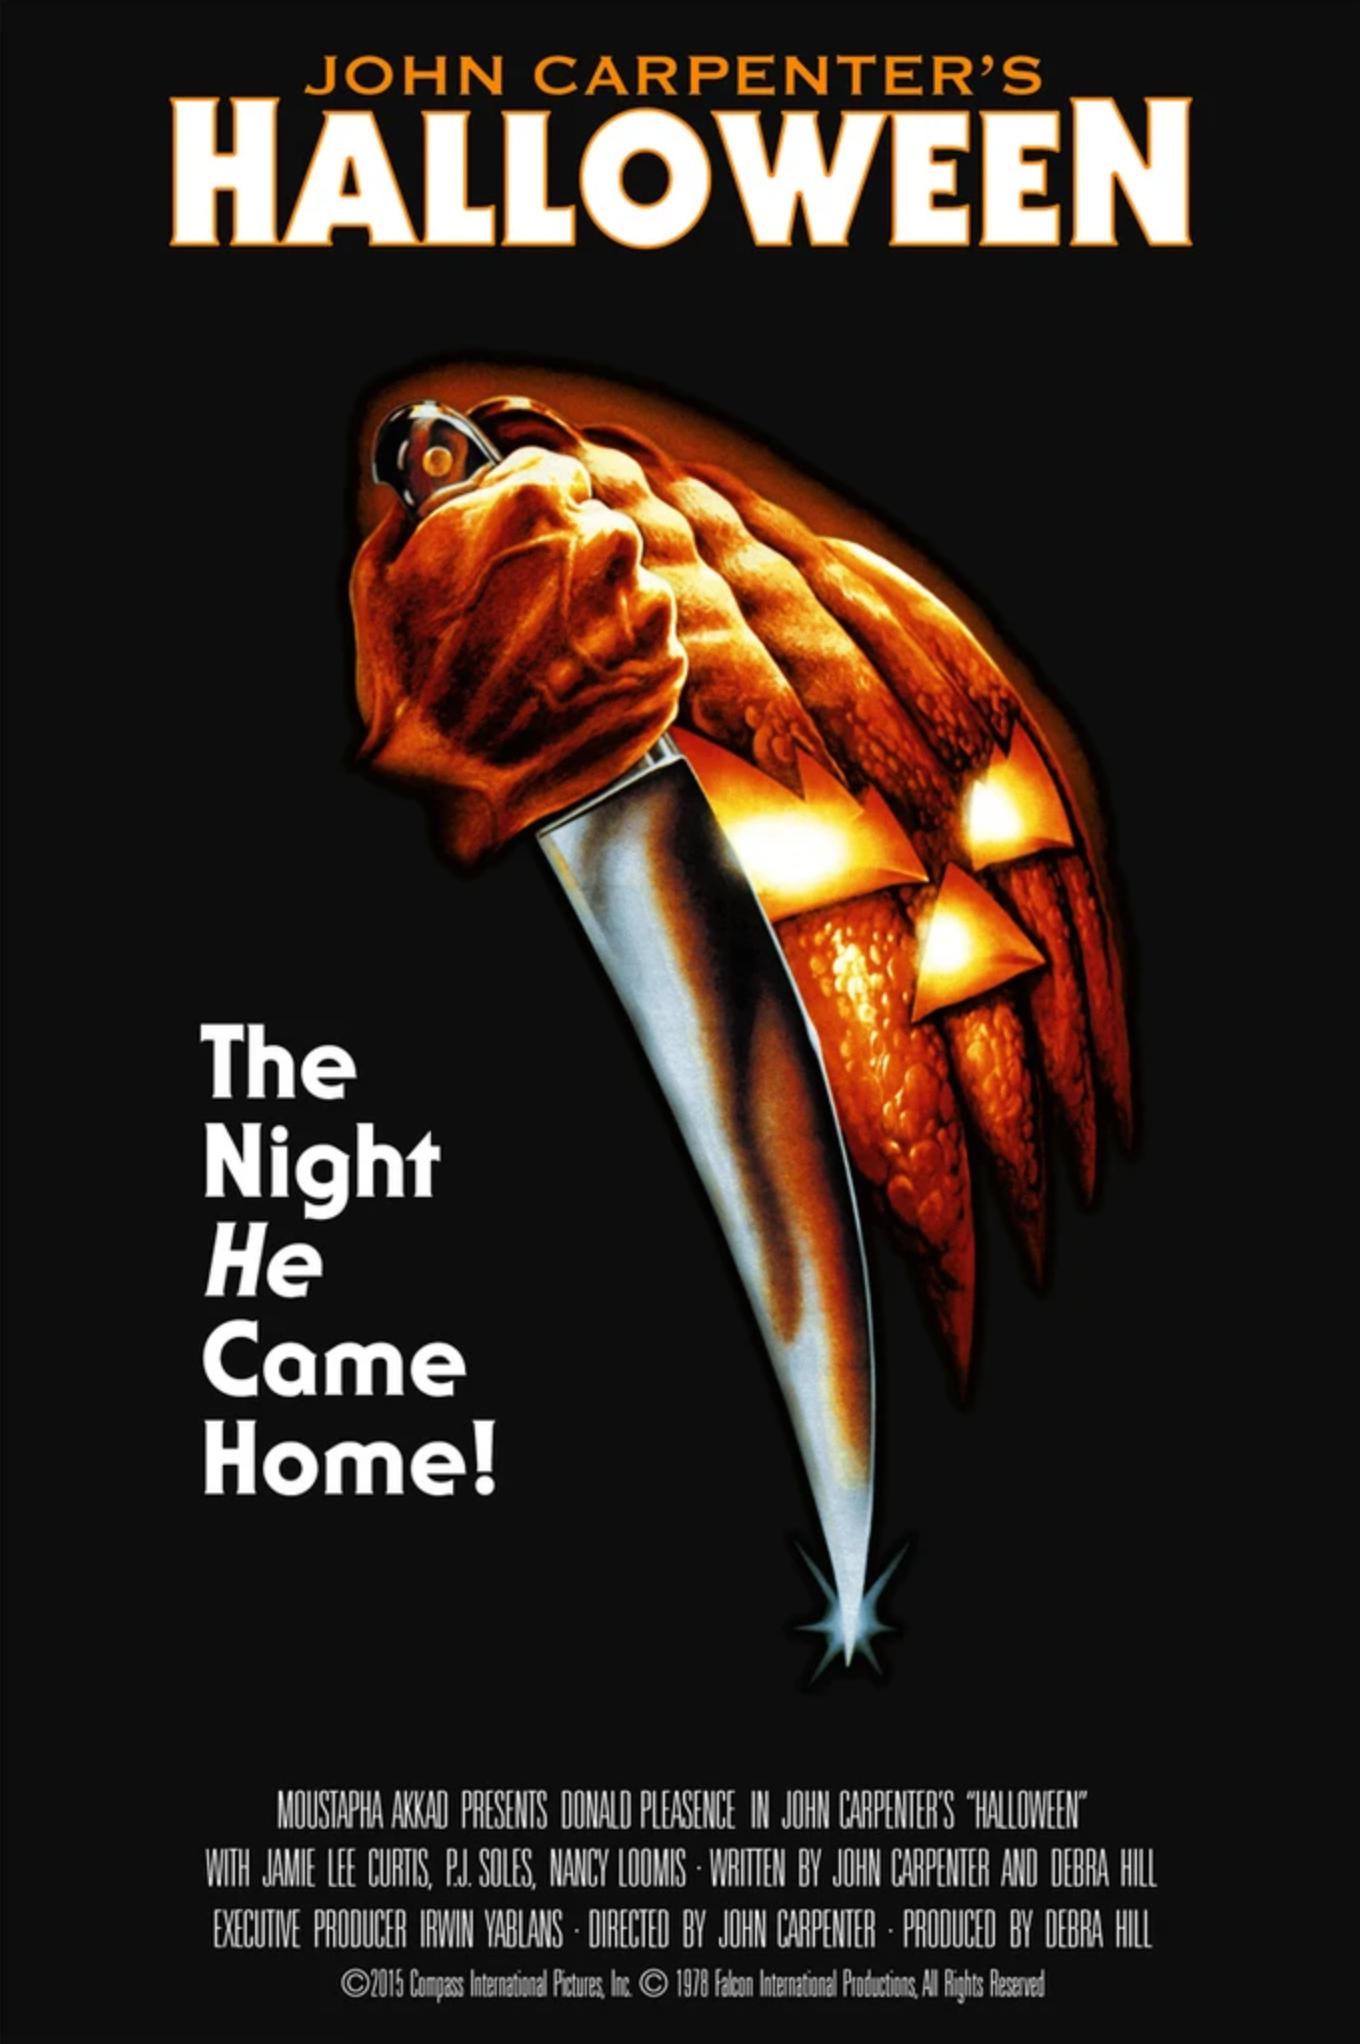 Bob Gleason, 40e anniversaire d'Halloween Ed. - Affiche de cinéma Contemporary Cinema Movie Poster